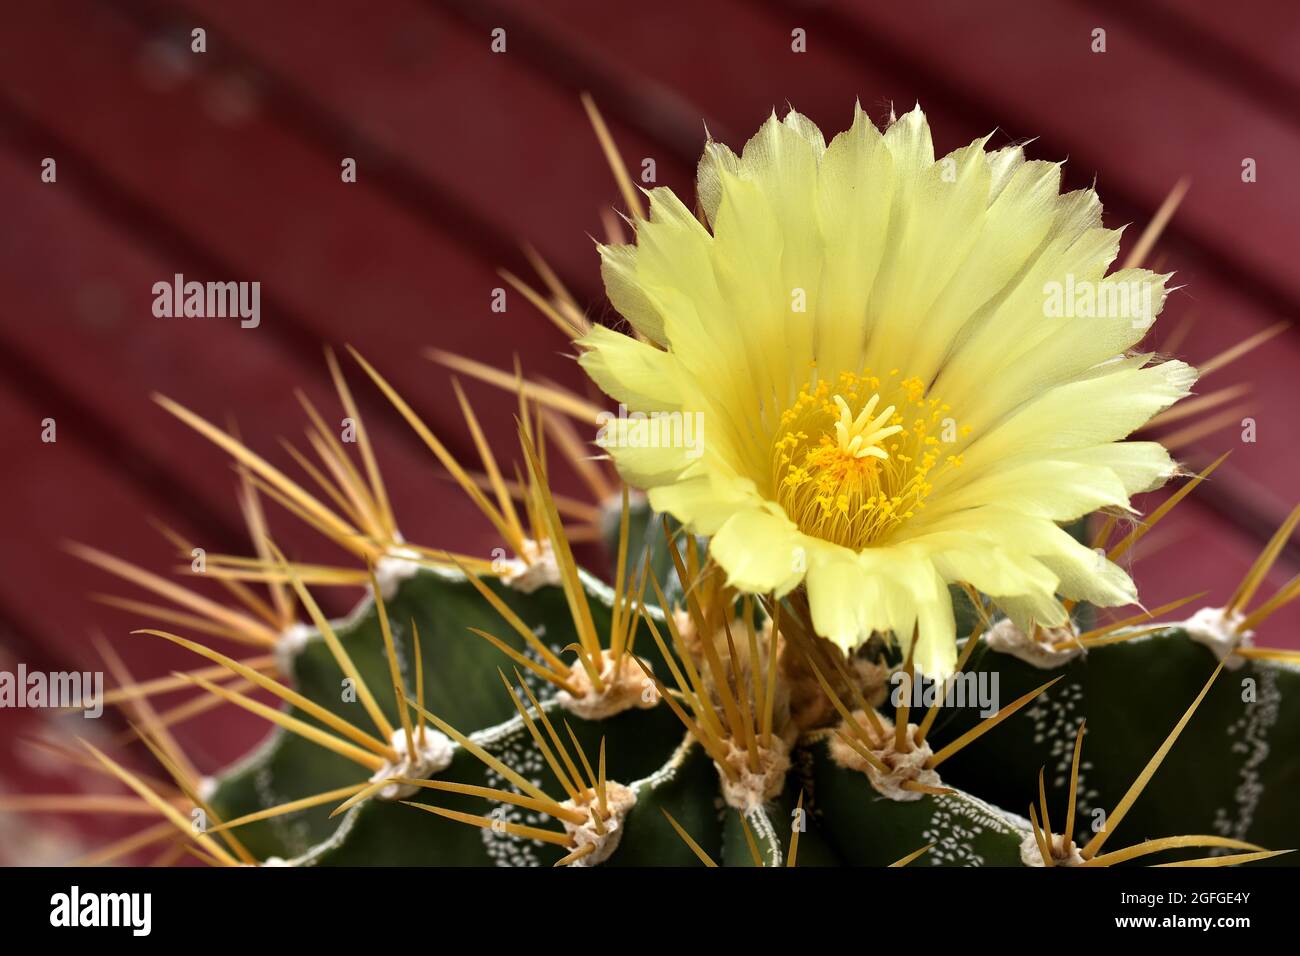 Bel fiore giallo con delicati petali e stamens di un cactus rotondo con  spine acuminate Foto stock - Alamy